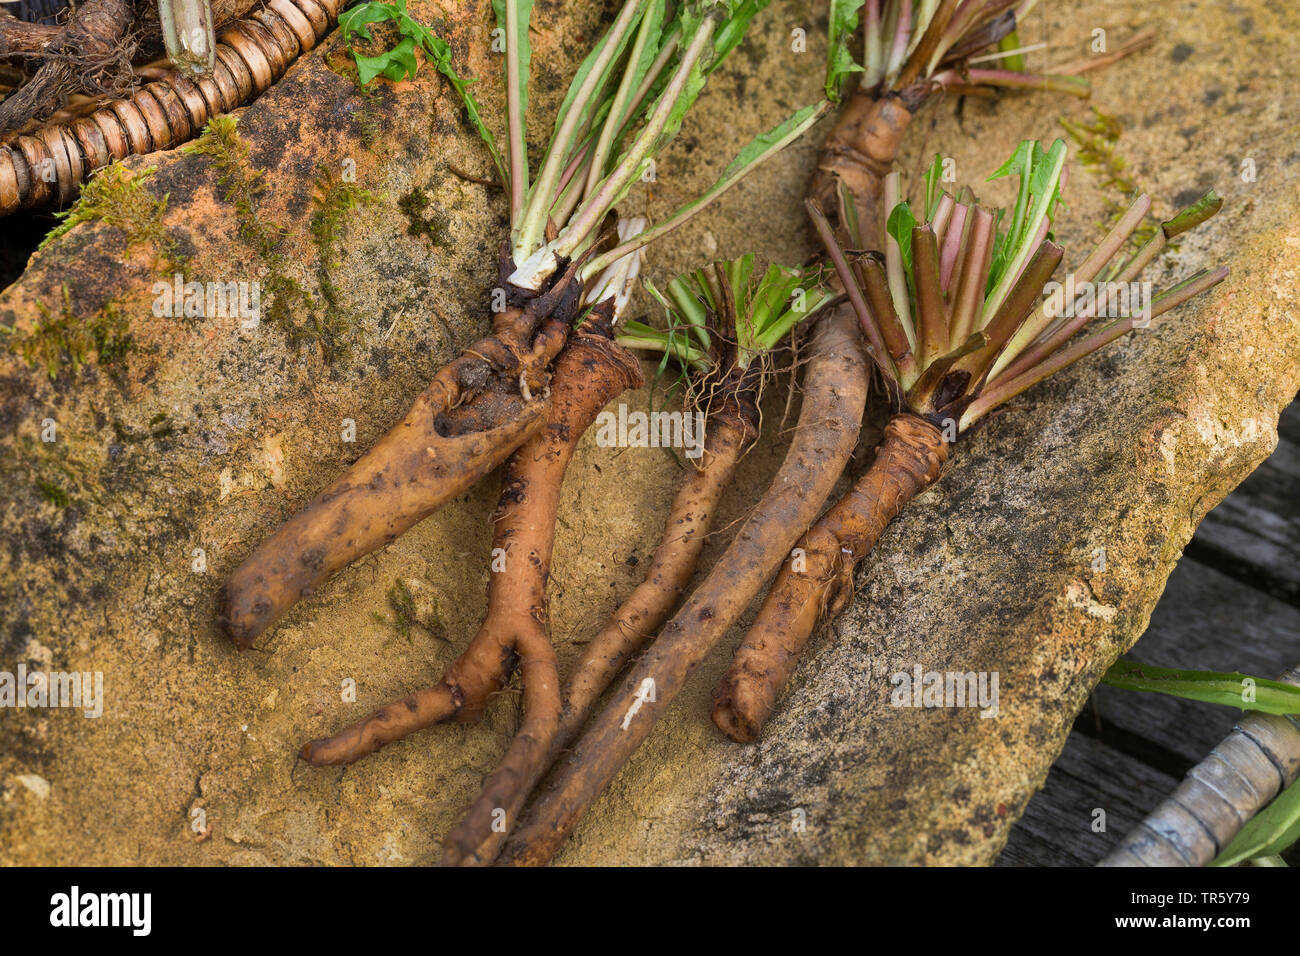 Le pissenlit officinal (Taraxacum officinale), racines de pissenlit recueillies avec étiquette, Allemagne Banque D'Images